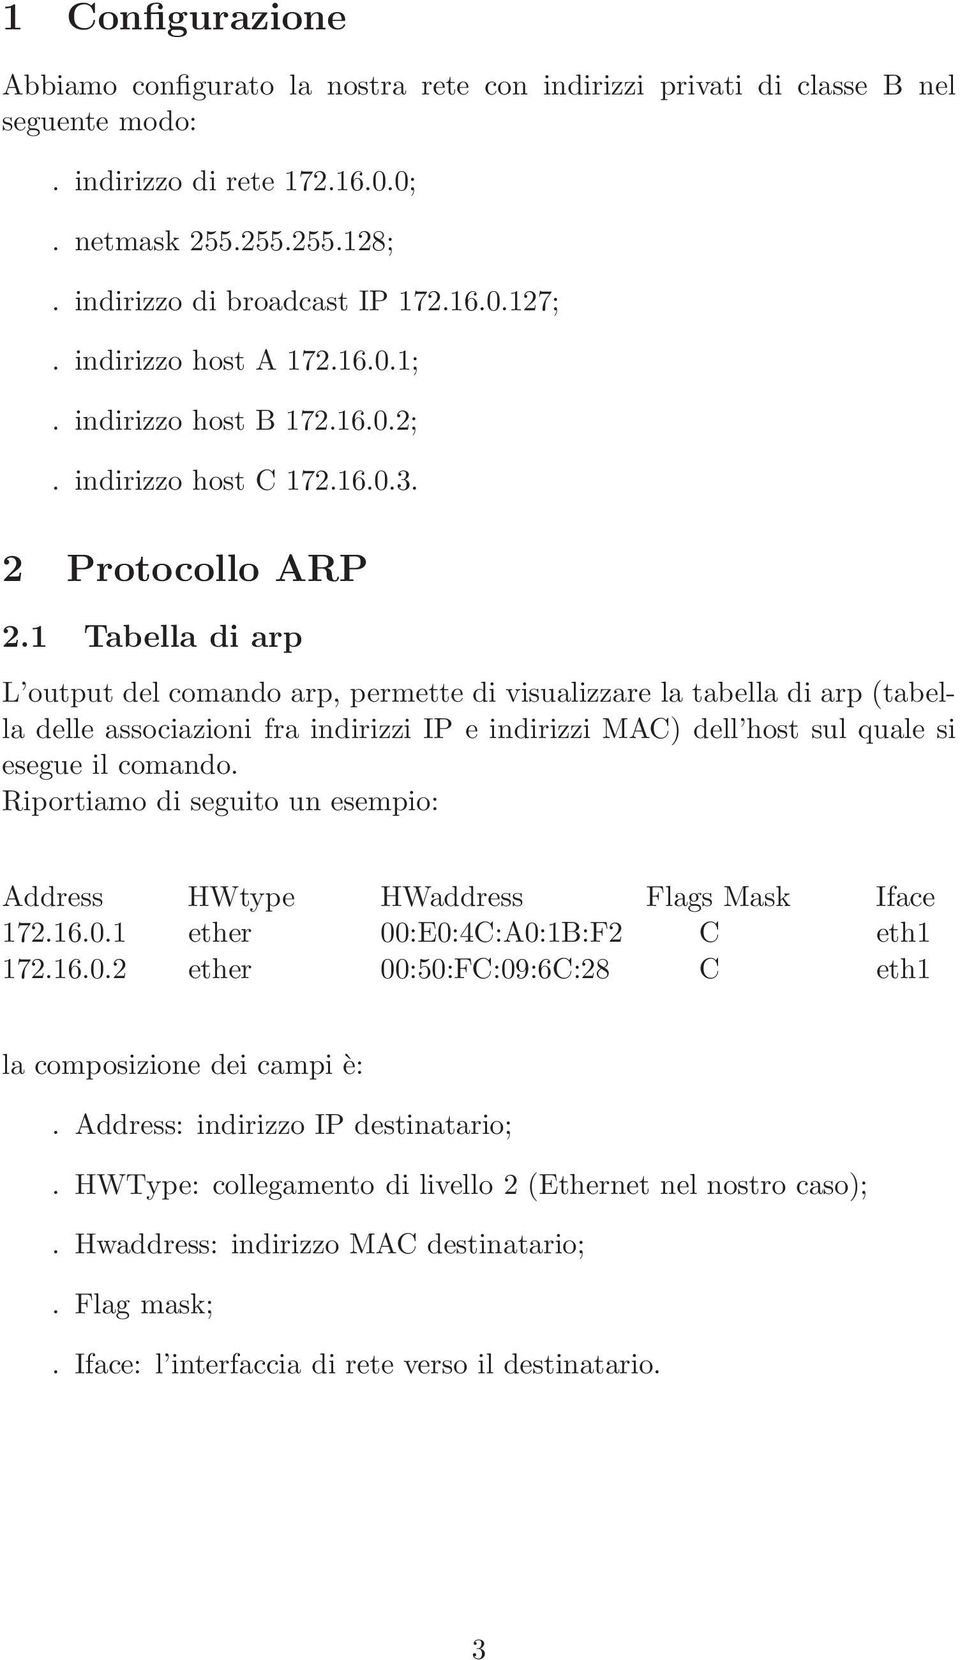 1 Tabella di arp L output del comando arp, permette di visualizzare la tabella di arp (tabella delle associazioni fra indirizzi IP e indirizzi MAC) dell host sul quale si esegue il comando.